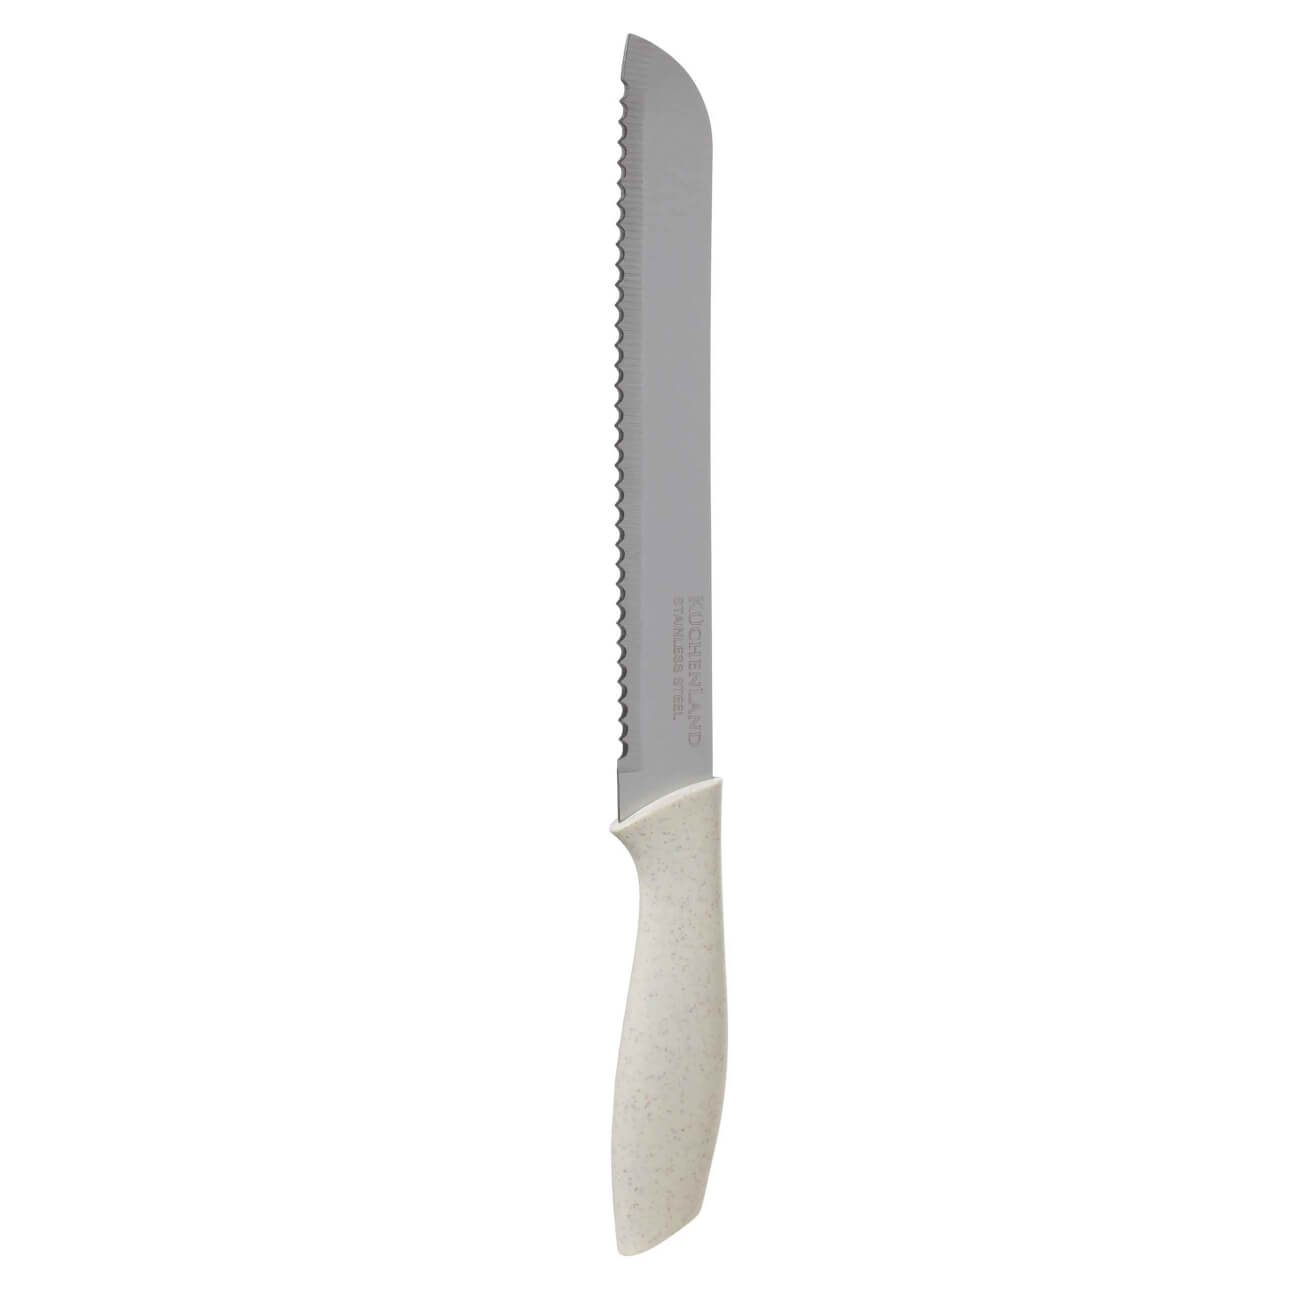 Нож хлебный, 20 см, сталь/пластик, молочный, Speck-light нож хлебный 20 см сталь пластик actual